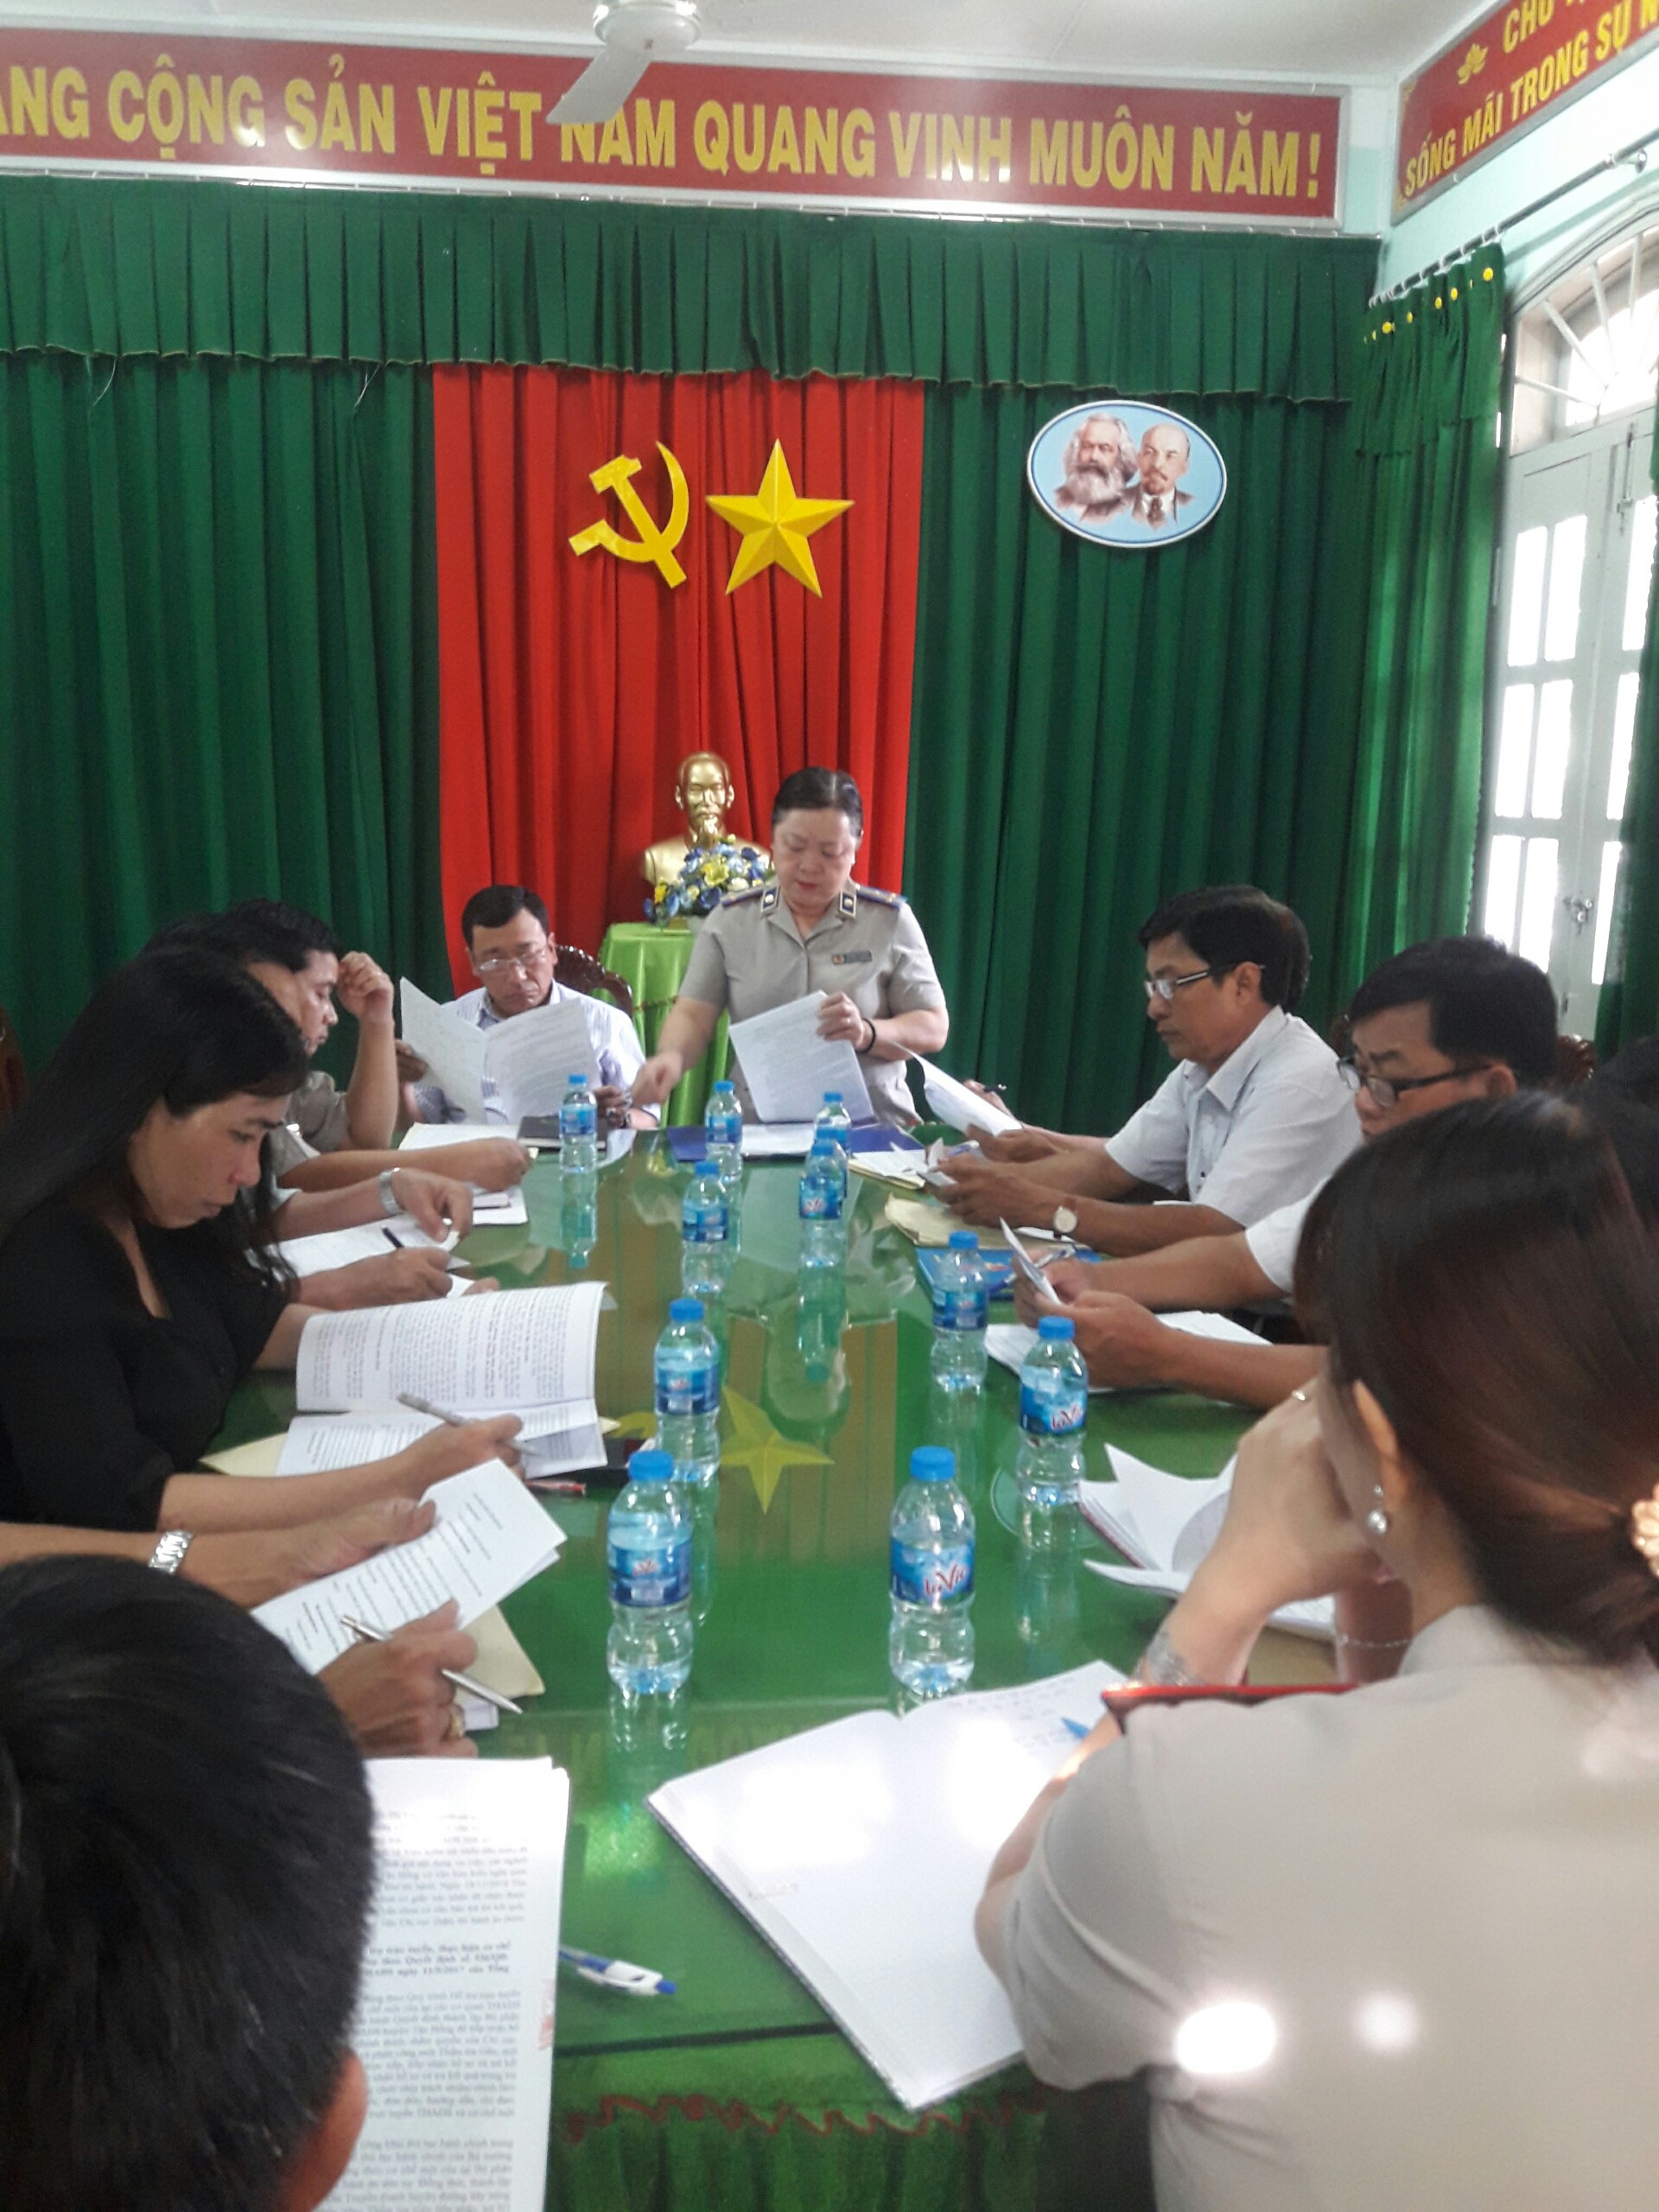 Hội đồng nhân dân huyện Tân Hồng giám sát công tác thi hành án dân sự năm 2018 trên địa bàn huyện